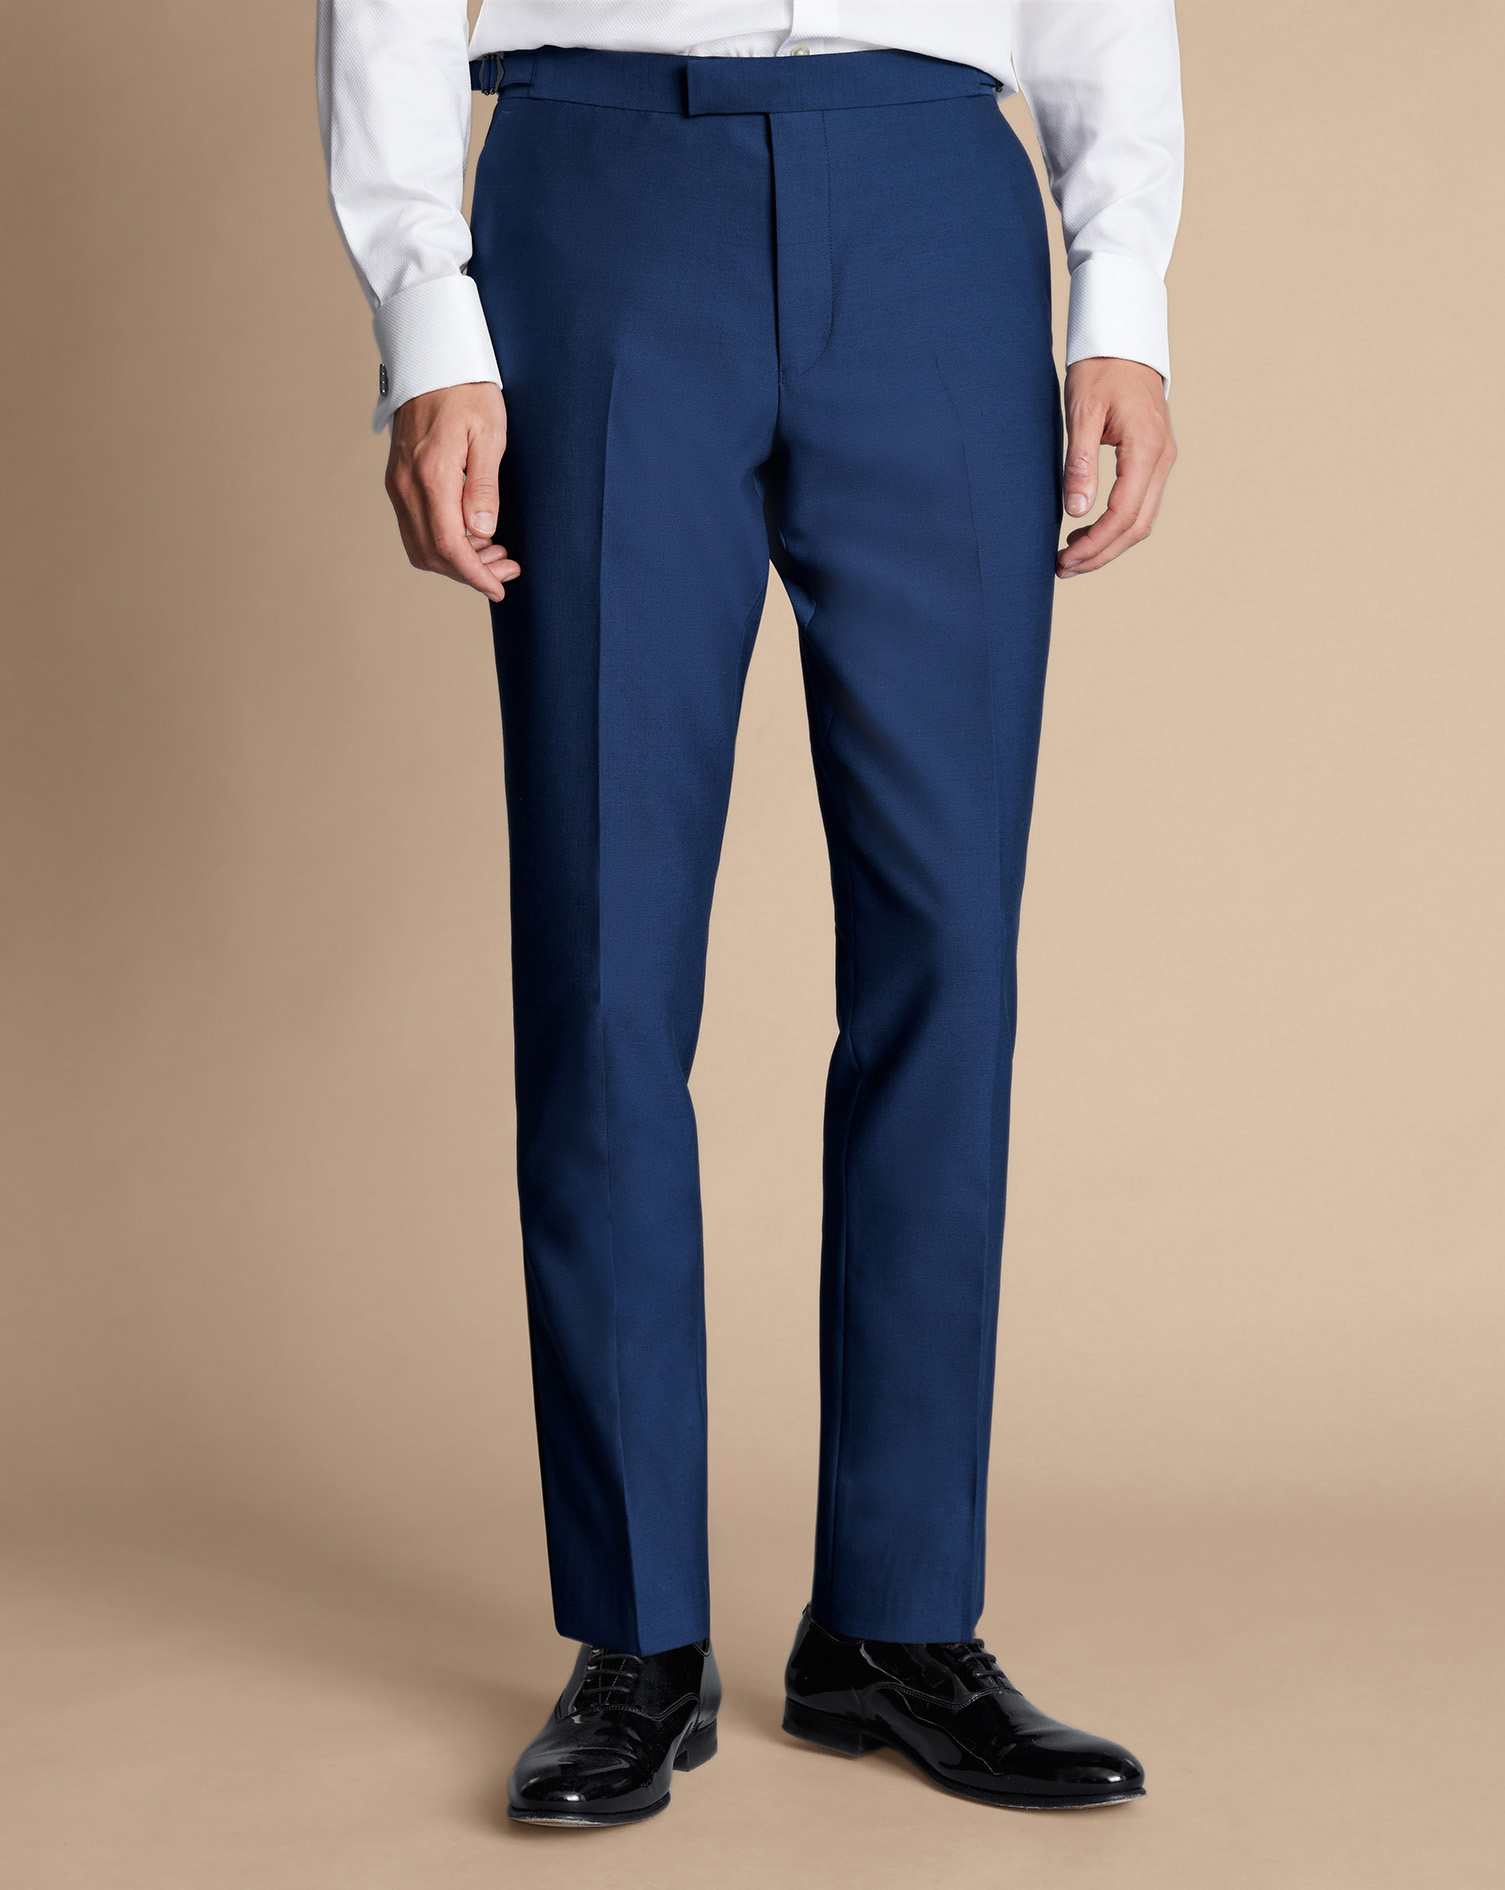 Men's Charles Tyrwhitt Dinner Suit Trousers - Royal Blue Size 30/32 Wool
